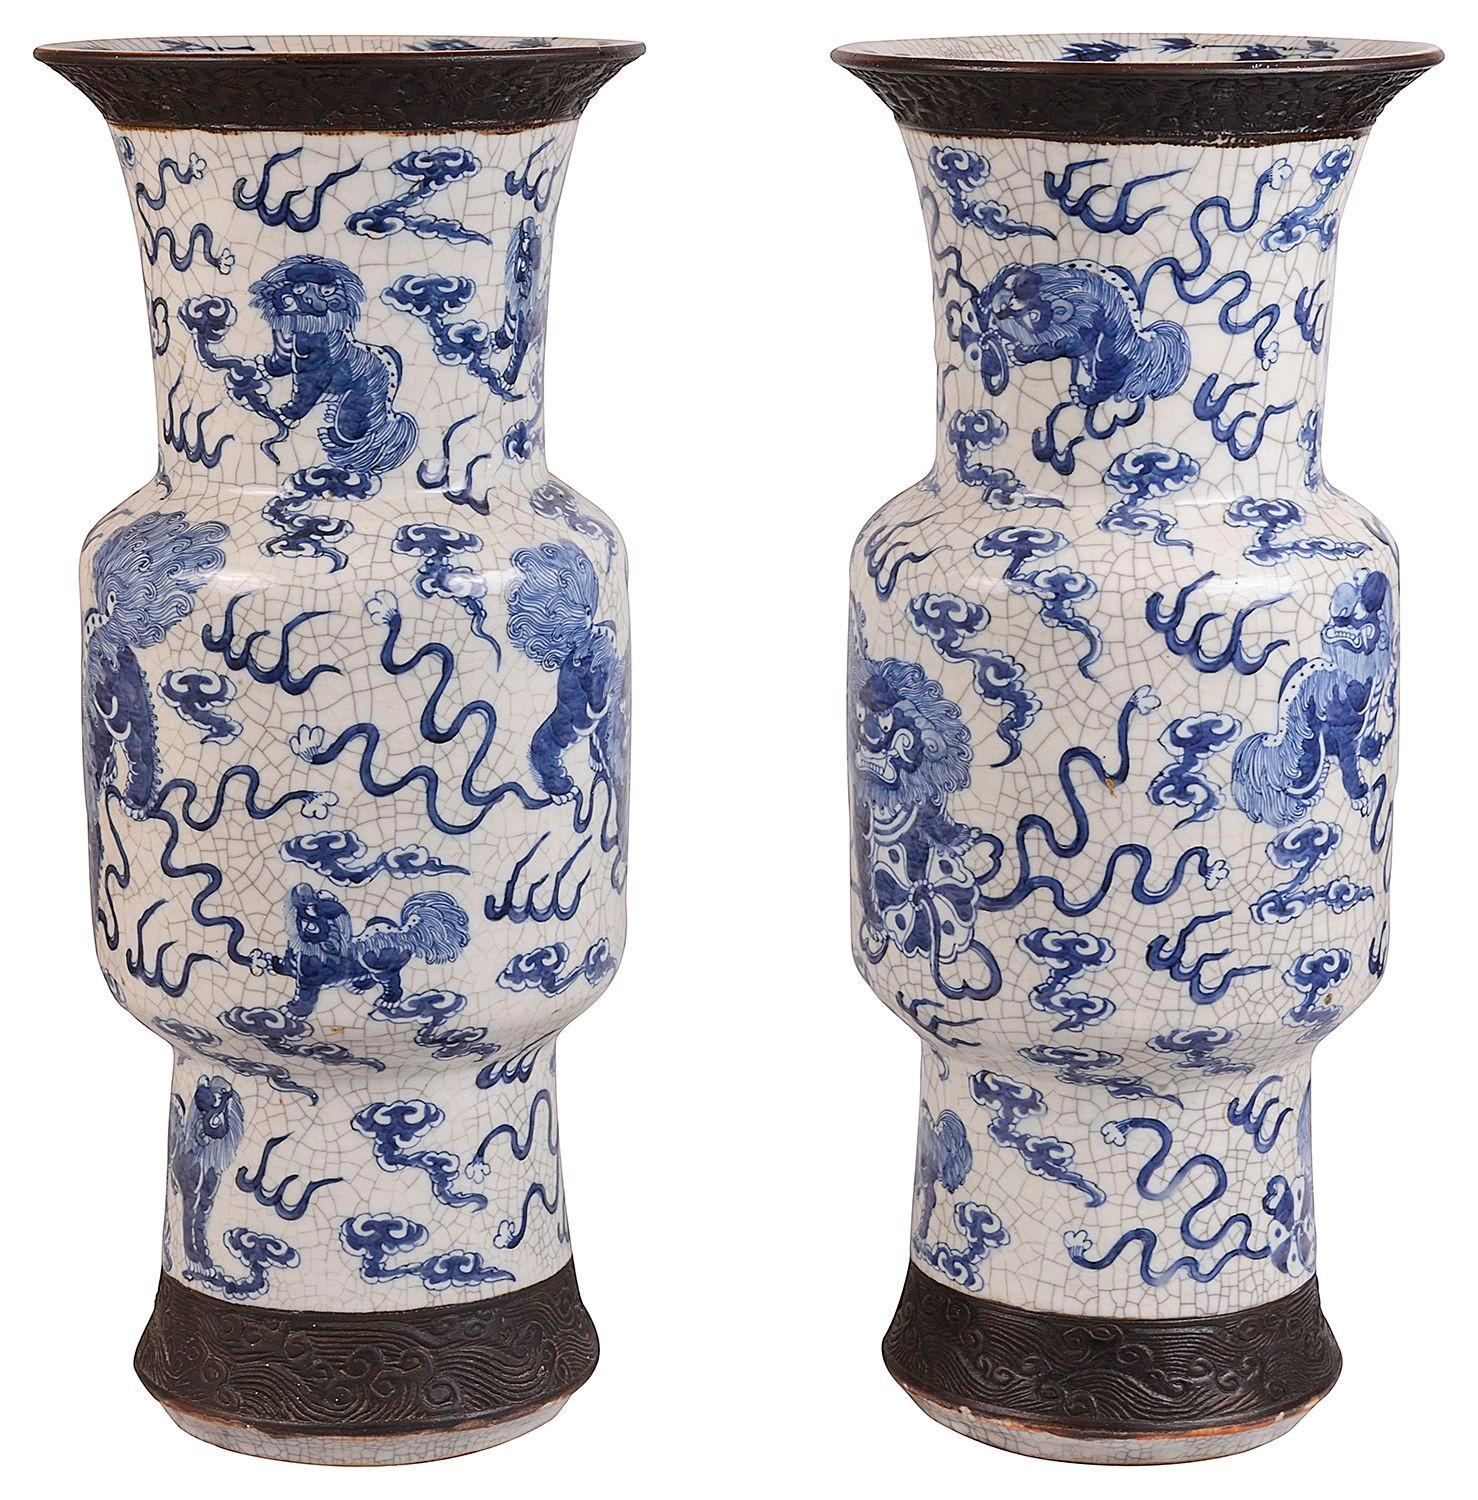 Une paire impressionnante de vases en faïence bleue et blanche de bonne qualité, datant du 19e siècle. Chaque panneau de faïence est orné en haut et en bas de rinceaux marins. Dragon mythique et chiens parmi les nuages et les serpents.

Lot 72